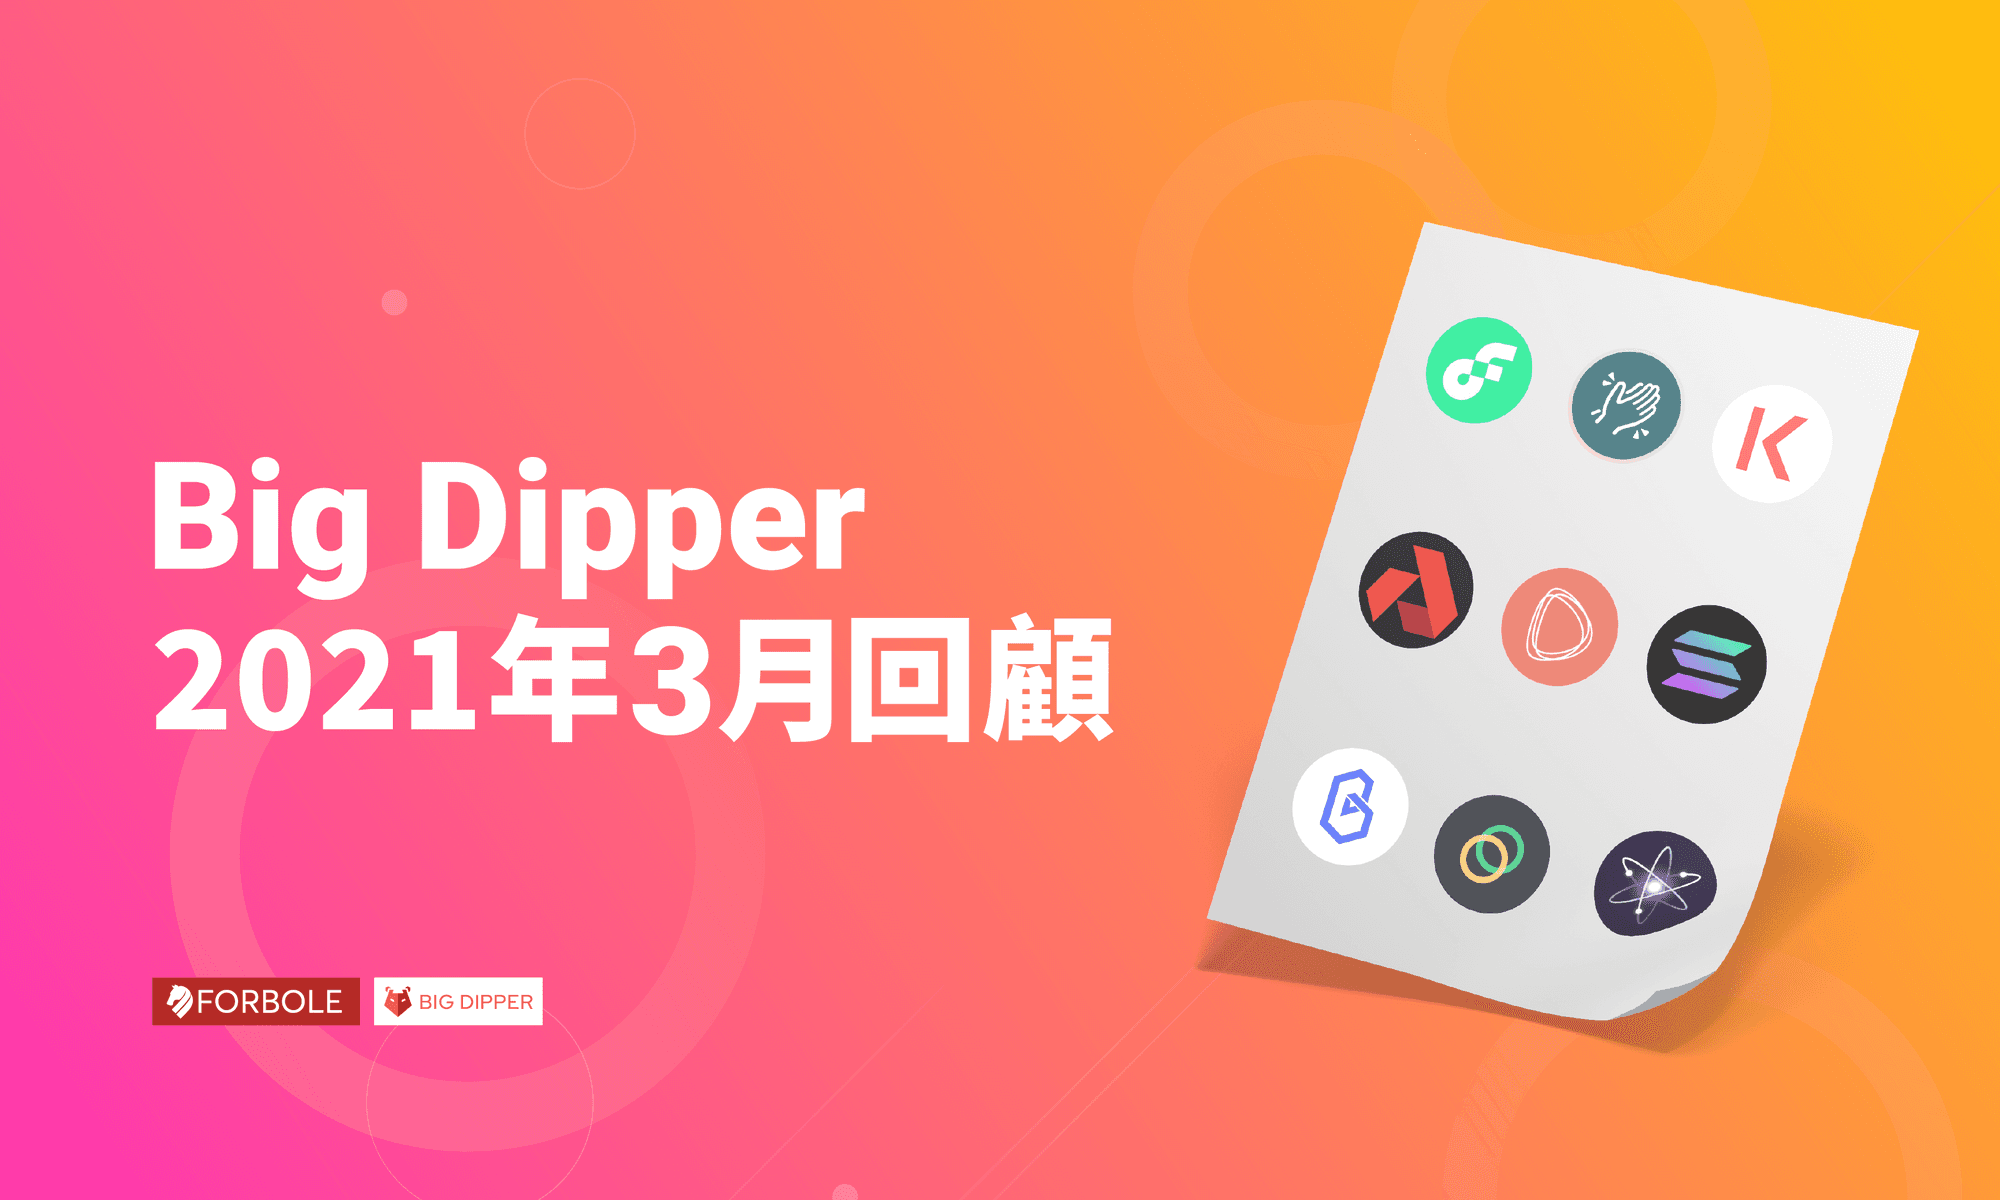 Big Dipper 每月回顧 - 2021 年 3 月